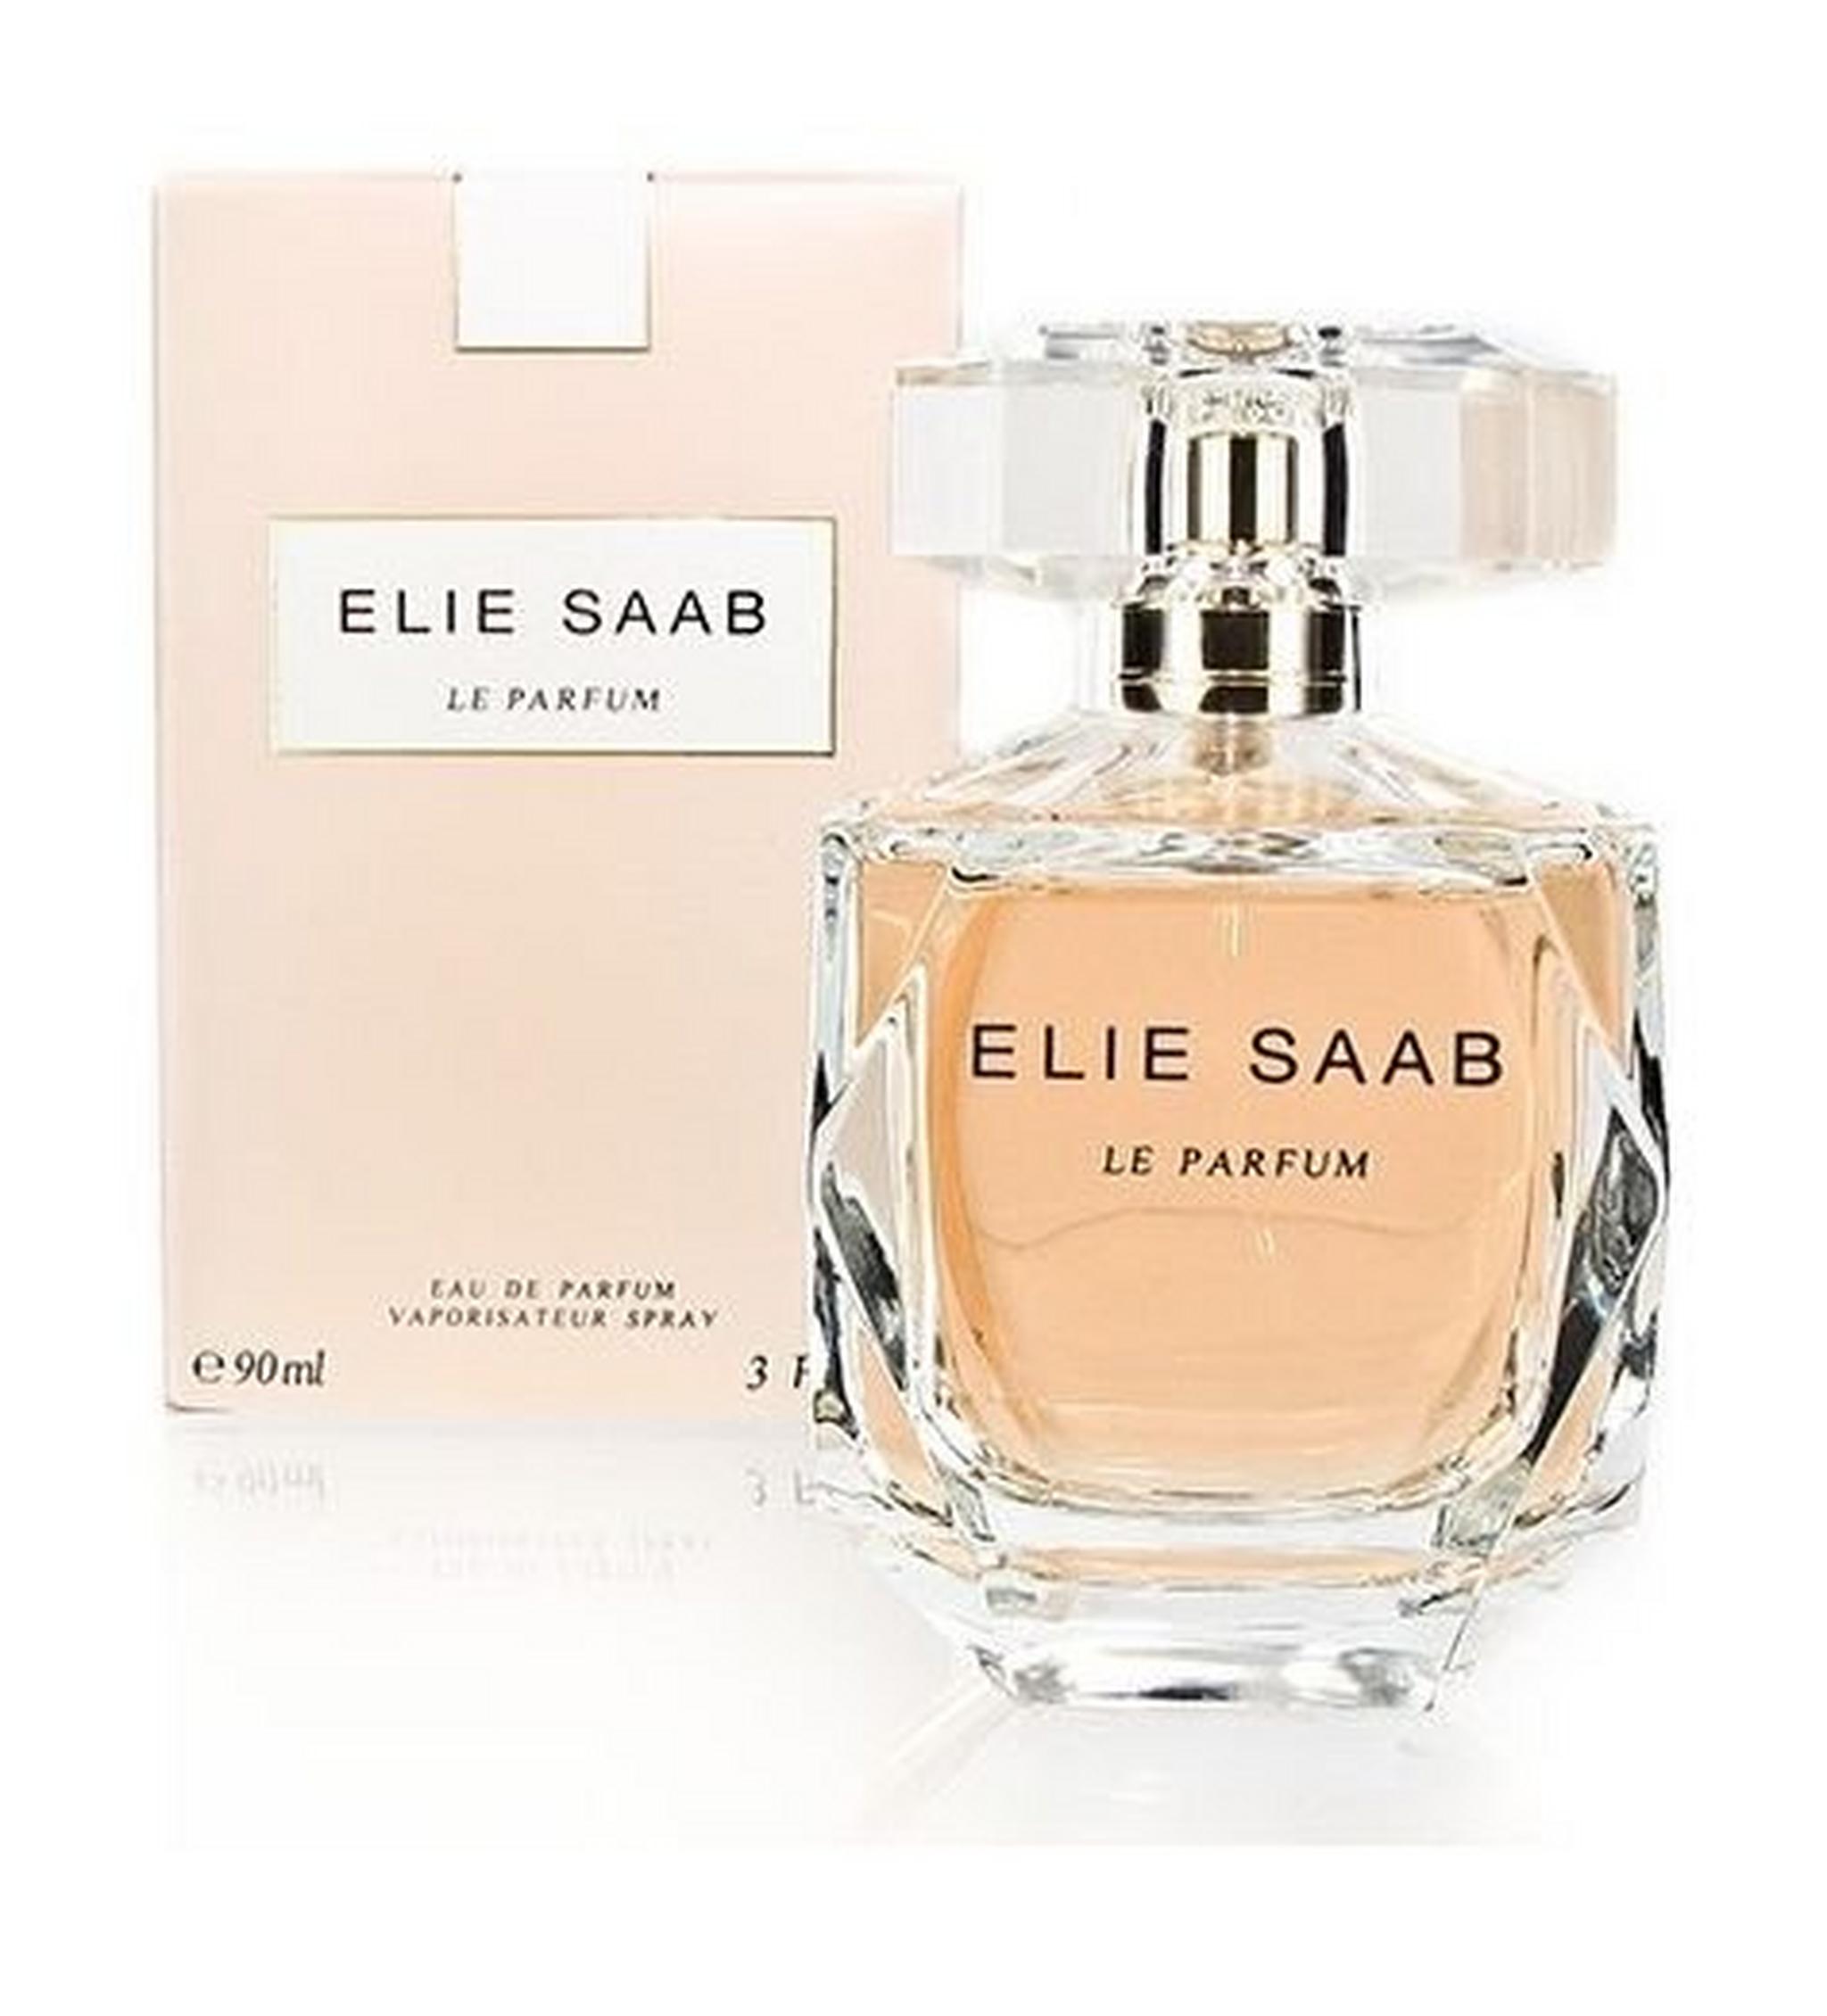 Le Parfum by Elie Saab for Women 90 mL Eau de Parfum